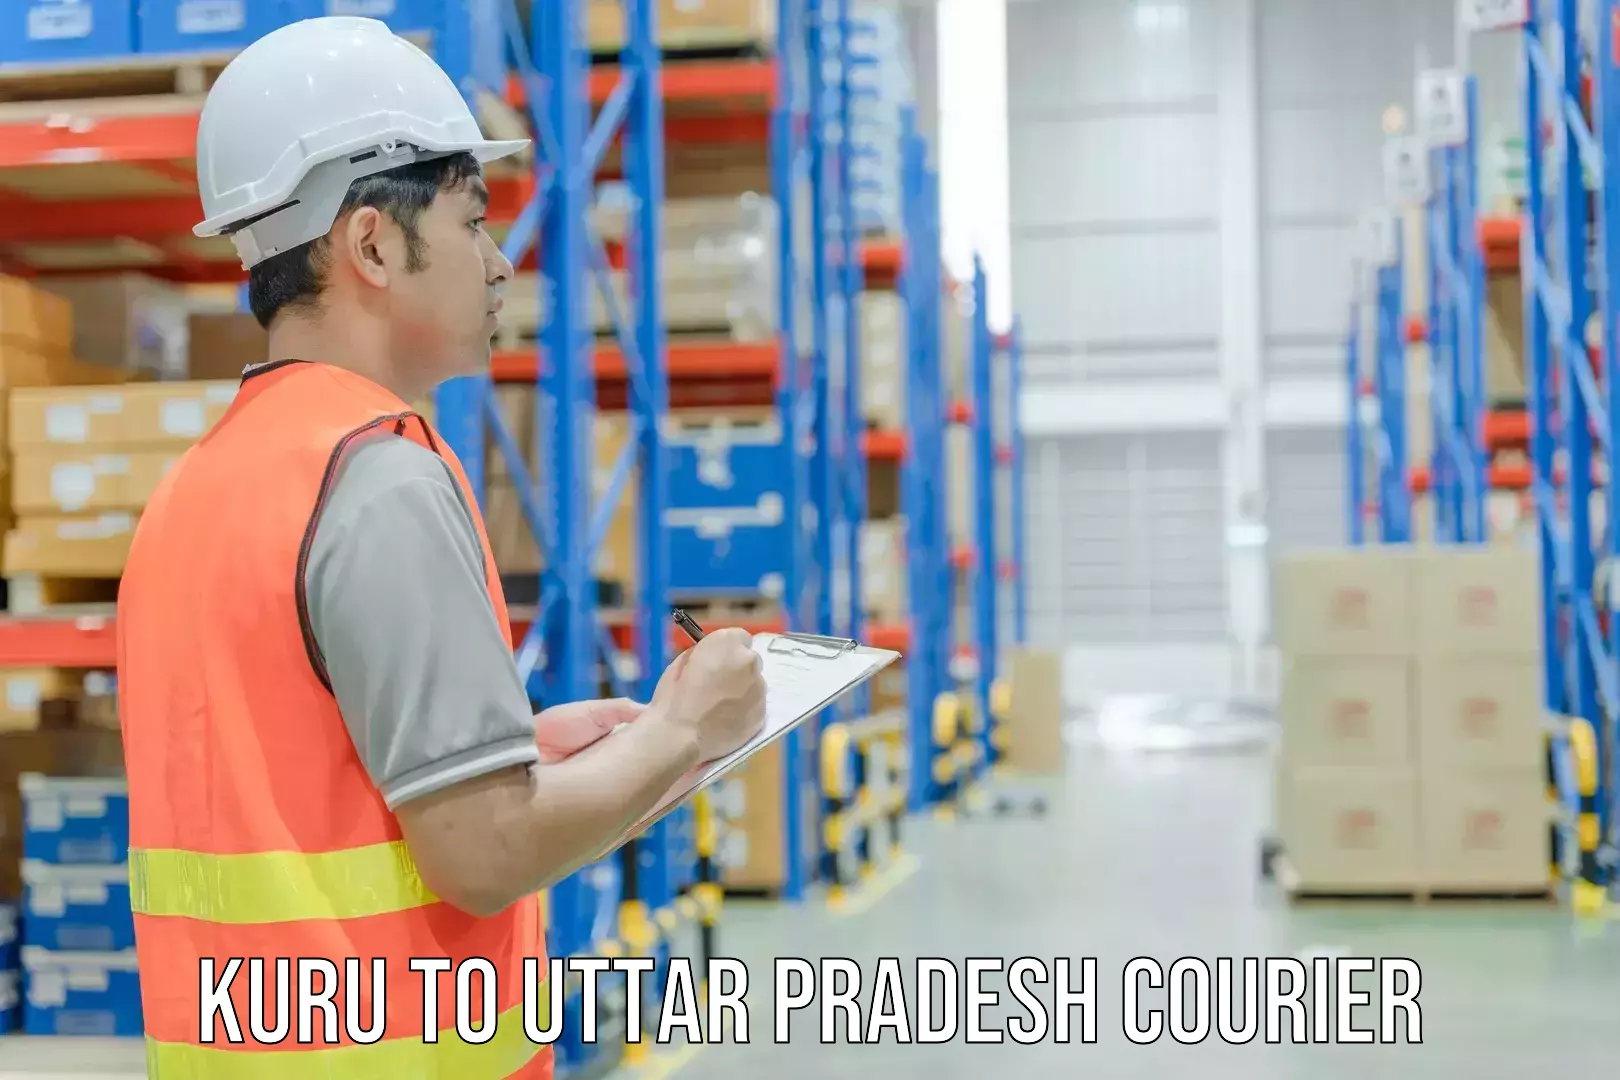 Business shipping needs Kuru to Uttar Pradesh